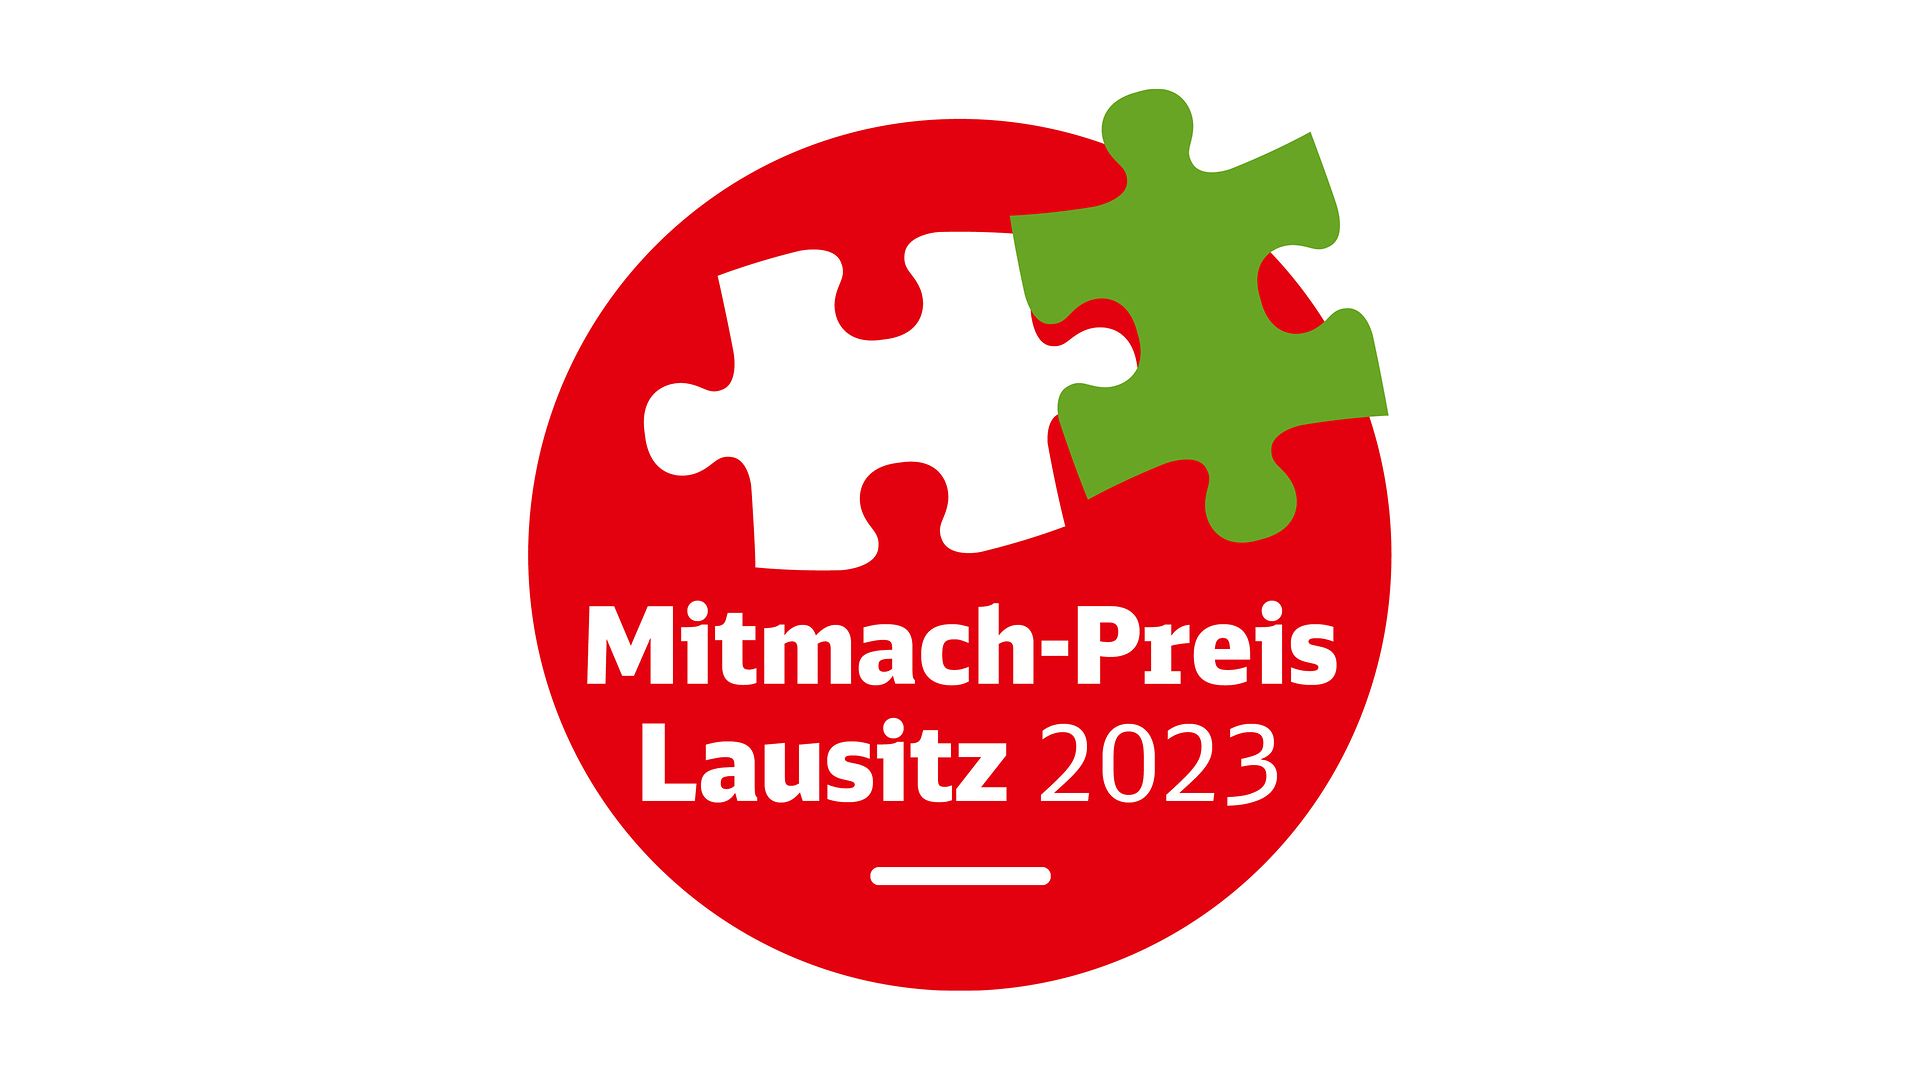 Aktionszeichen: Zwei Puzzleteile weiß und grün auf rotem Kreis mit Text "Mitmach-Preis Lausitz 2023 "